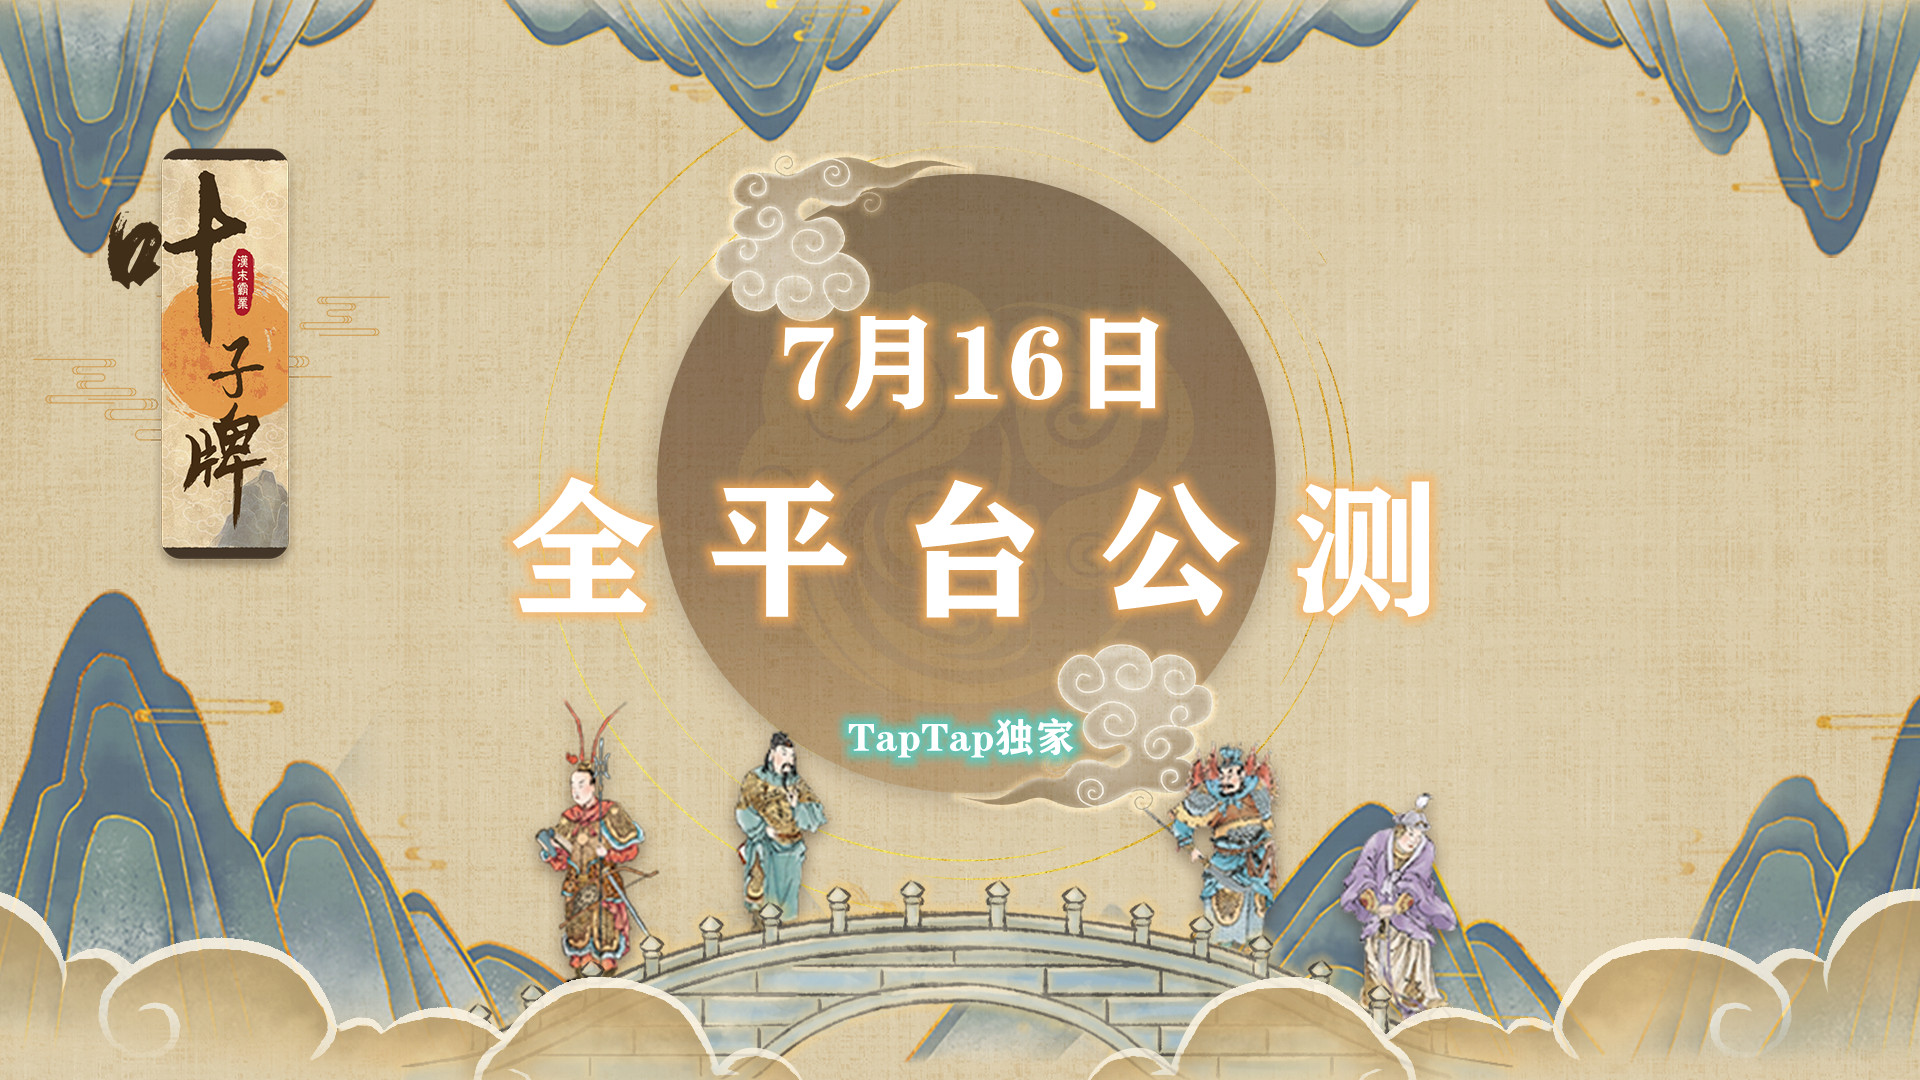 【公测预告】《汉末霸业:叶子牌》公测时间正式定档7月16日！